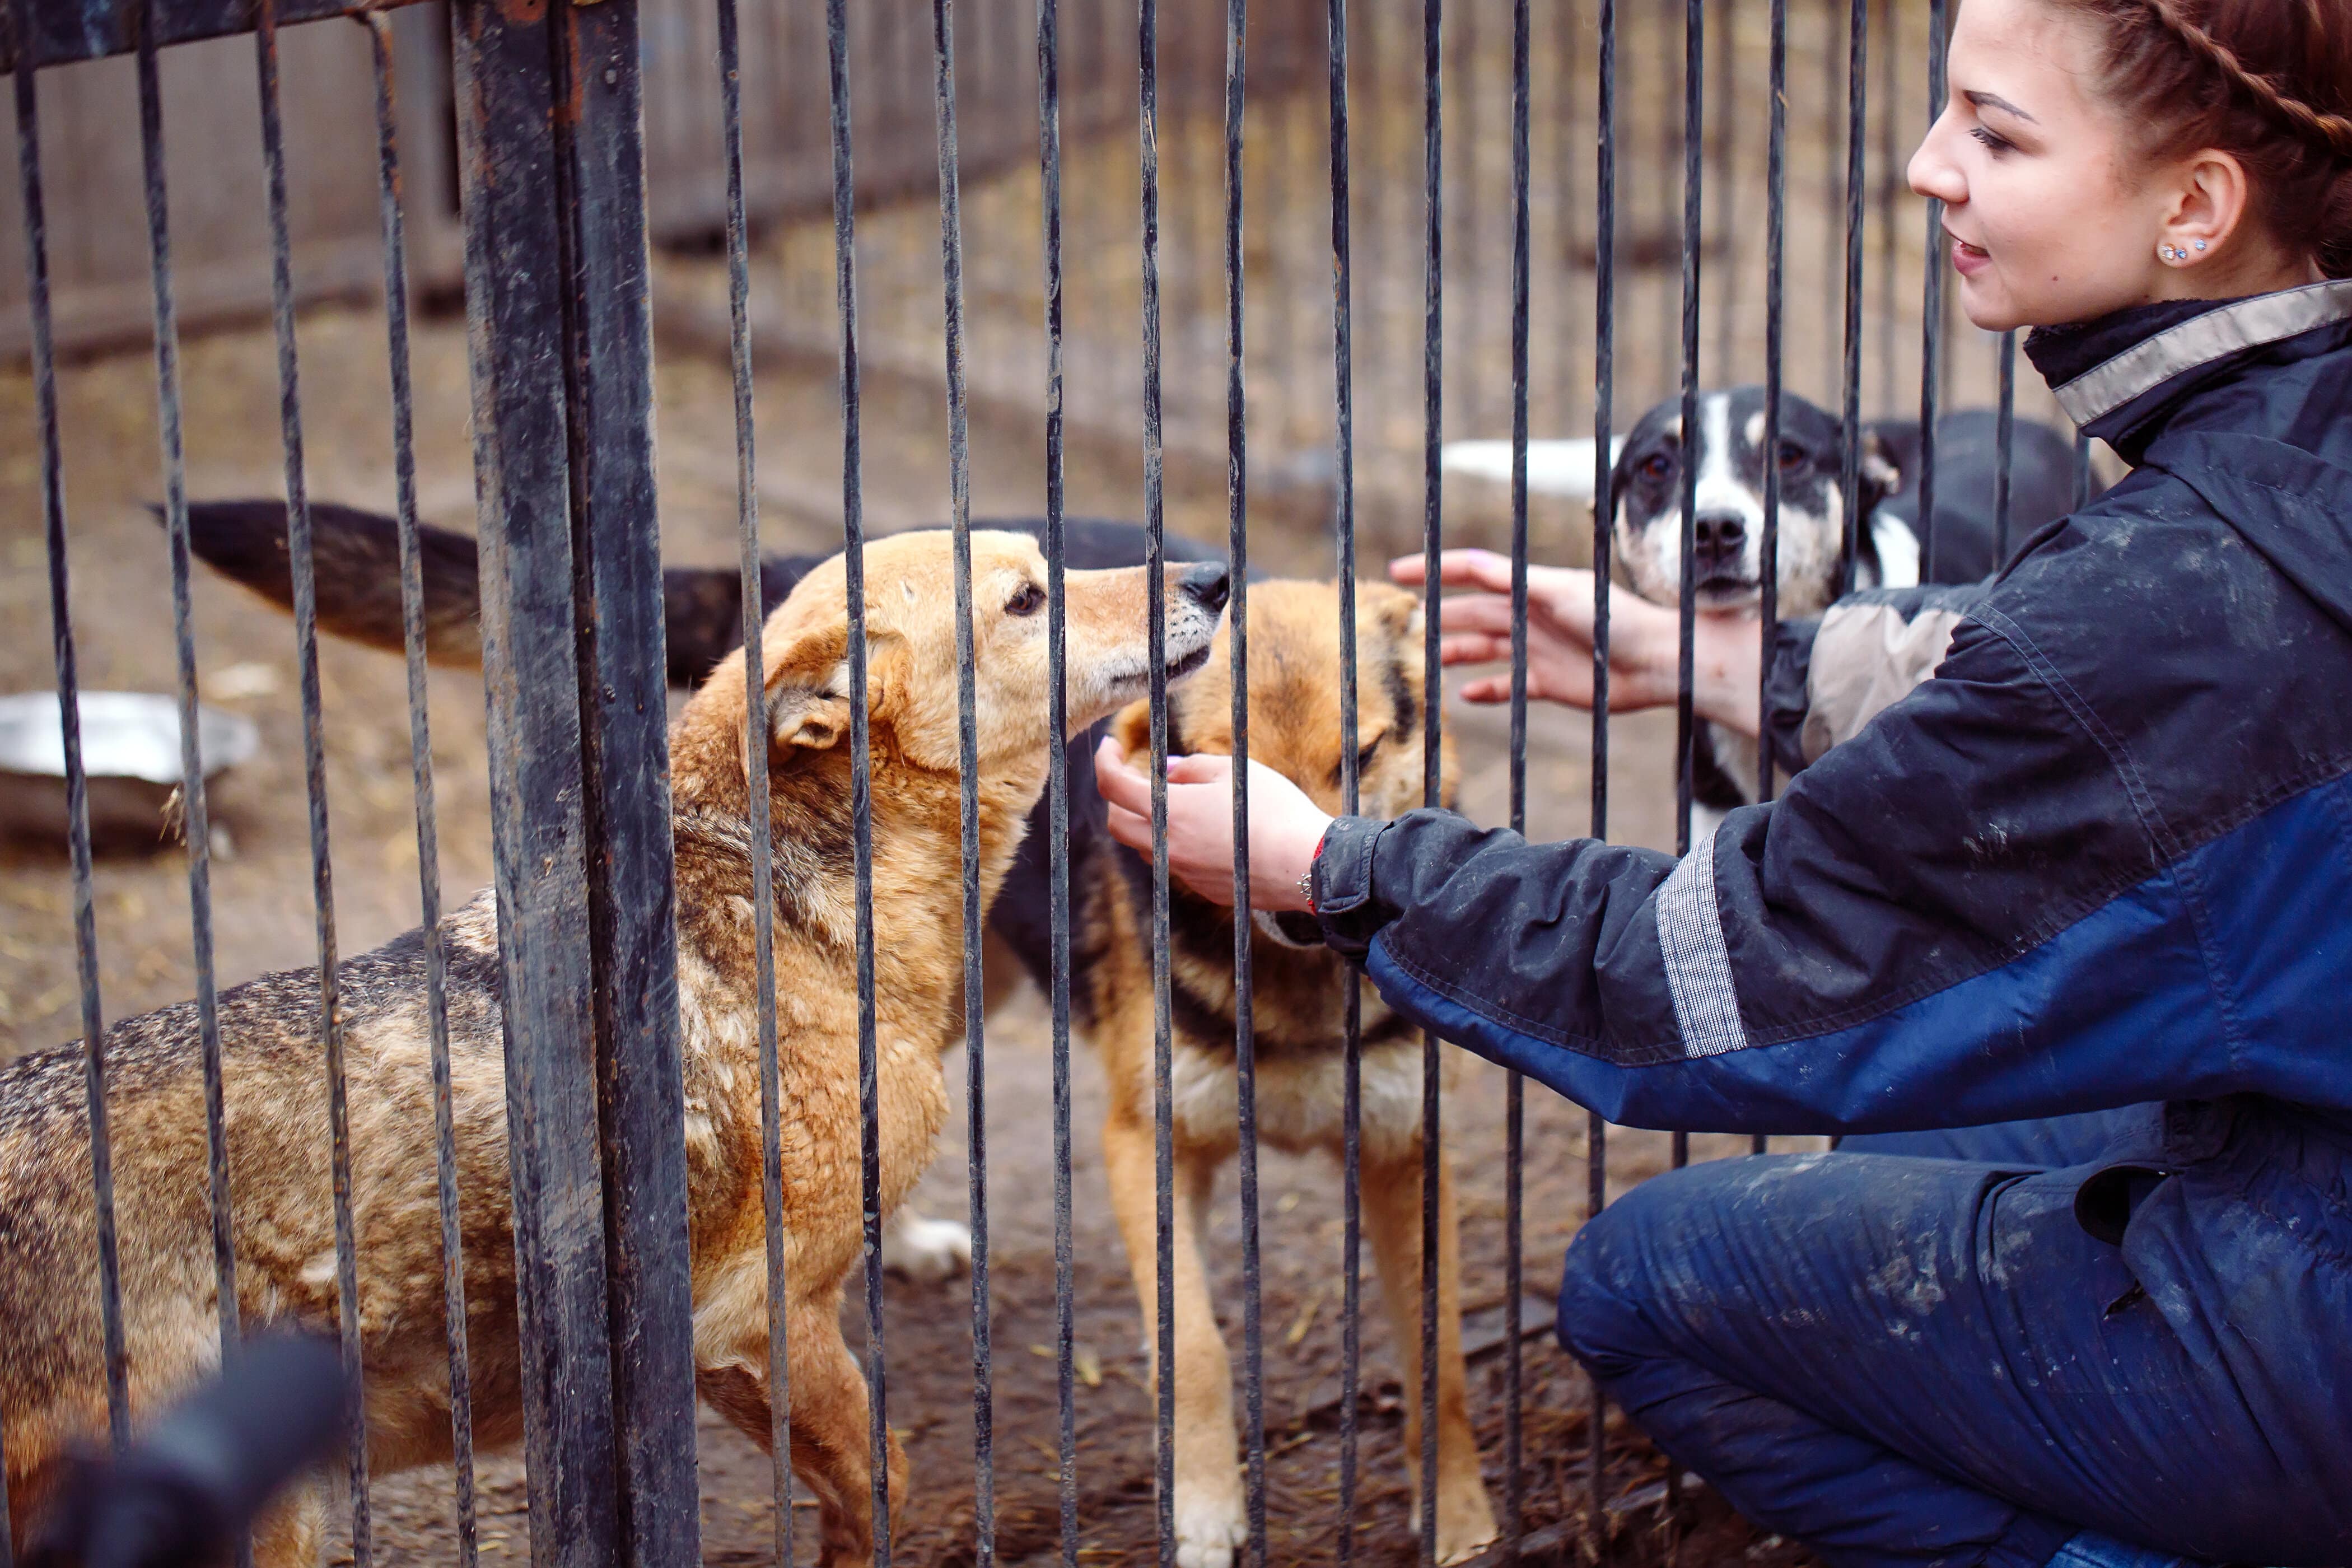 Volunteering at an animal shelter. Shelter приют. Животные в питомнике. Приют бездомных животных в Японии. Шелтер приют для бездомных.